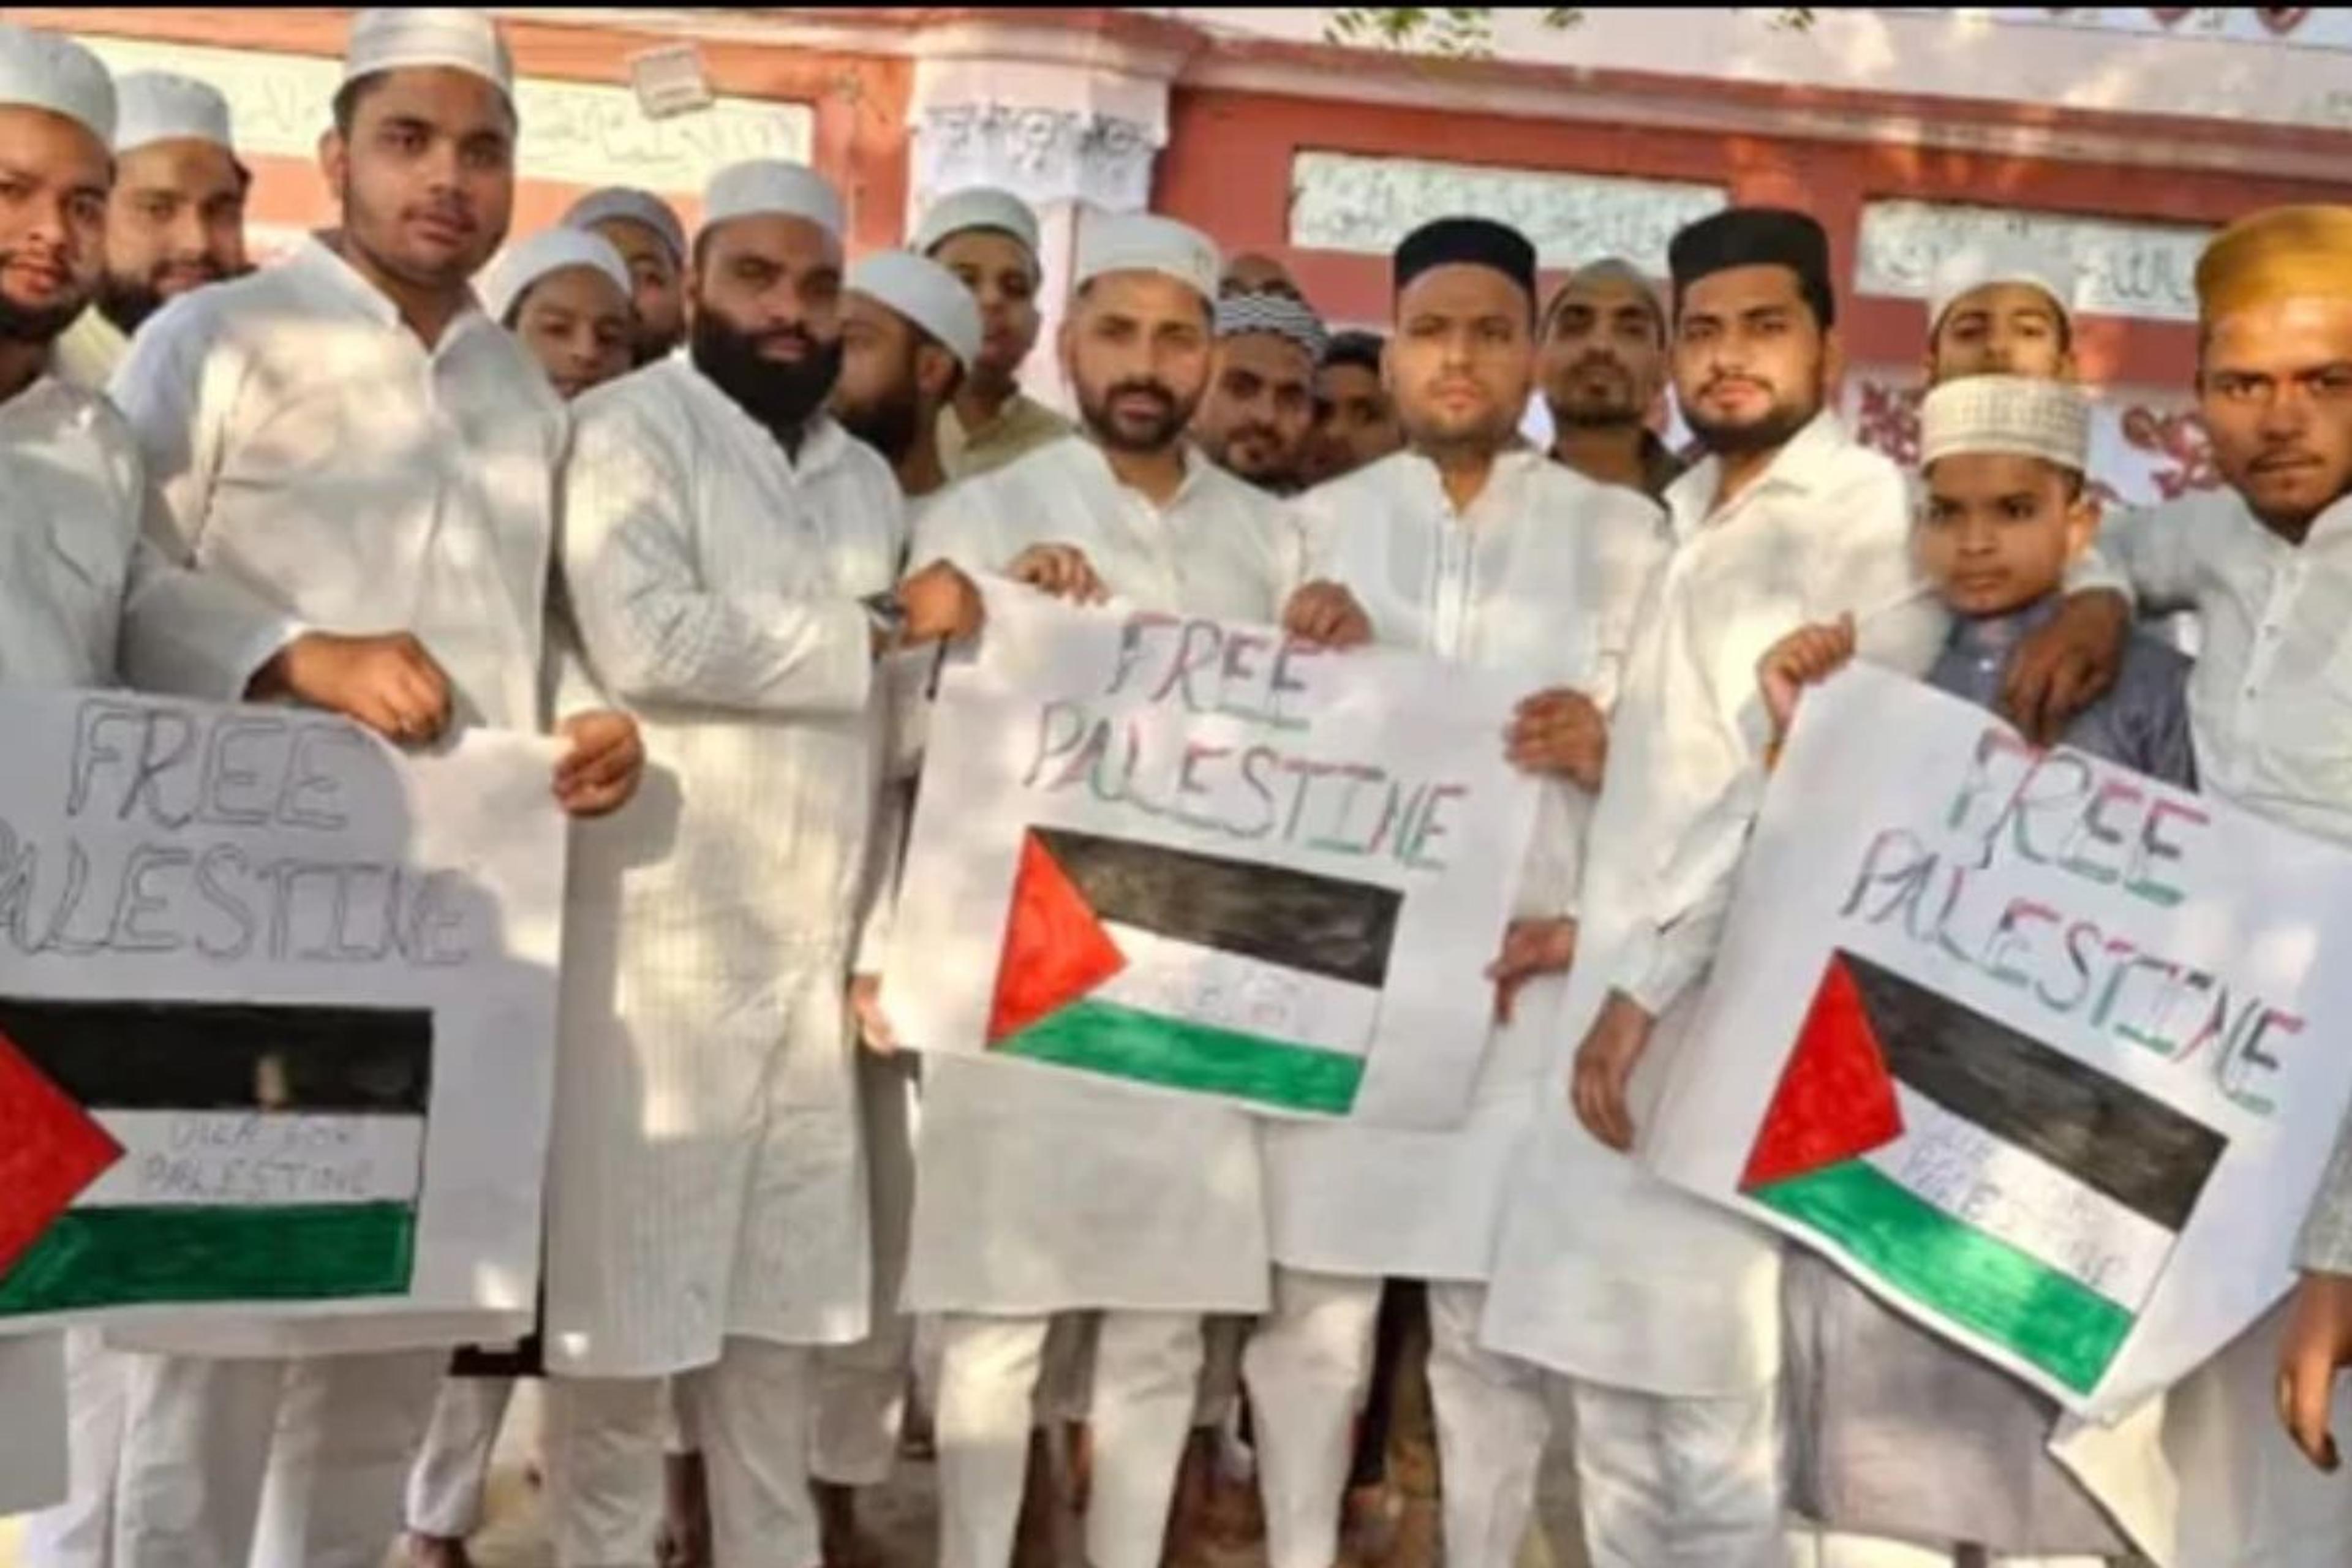 Palestine Free Slogans in Aligarh: ईद की नमाज पर अलीगढ़ में माहौल बिगाड़ने की
कोशिश फिलिस्तीनी समर्थित नारे लगे, पुलिस ने शुरू की जांच